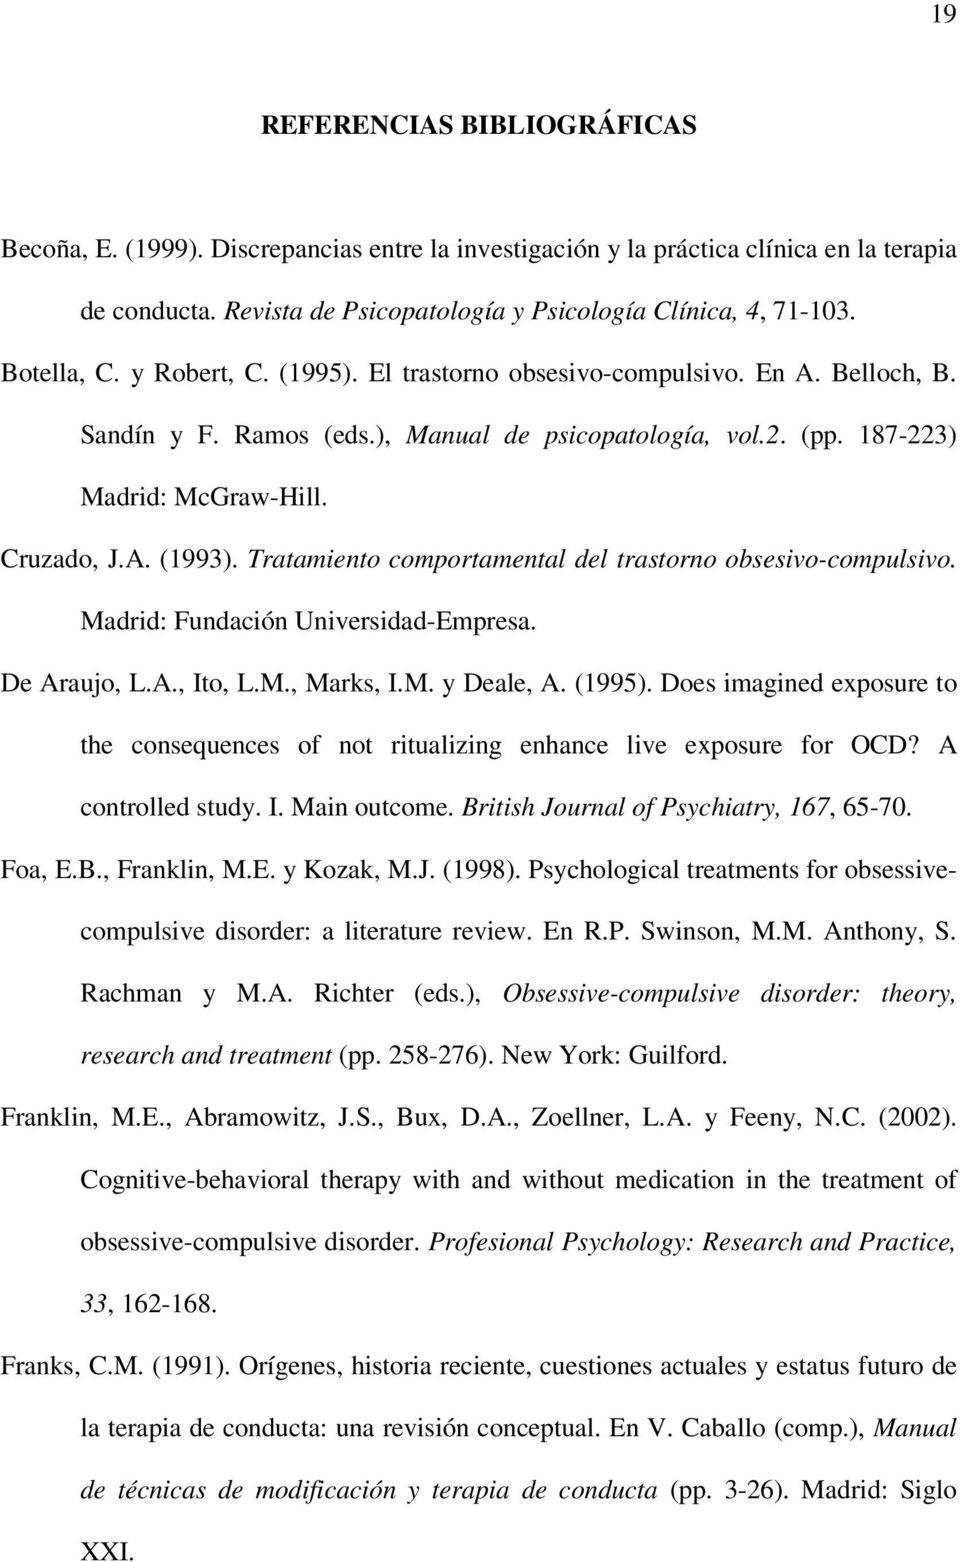 Tratamiento comportamental del trastorno obsesivo-compulsivo. Madrid: Fundación Universidad-Empresa. De Araujo, L.A., Ito, L.M., Marks, I.M. y Deale, A. (1995).